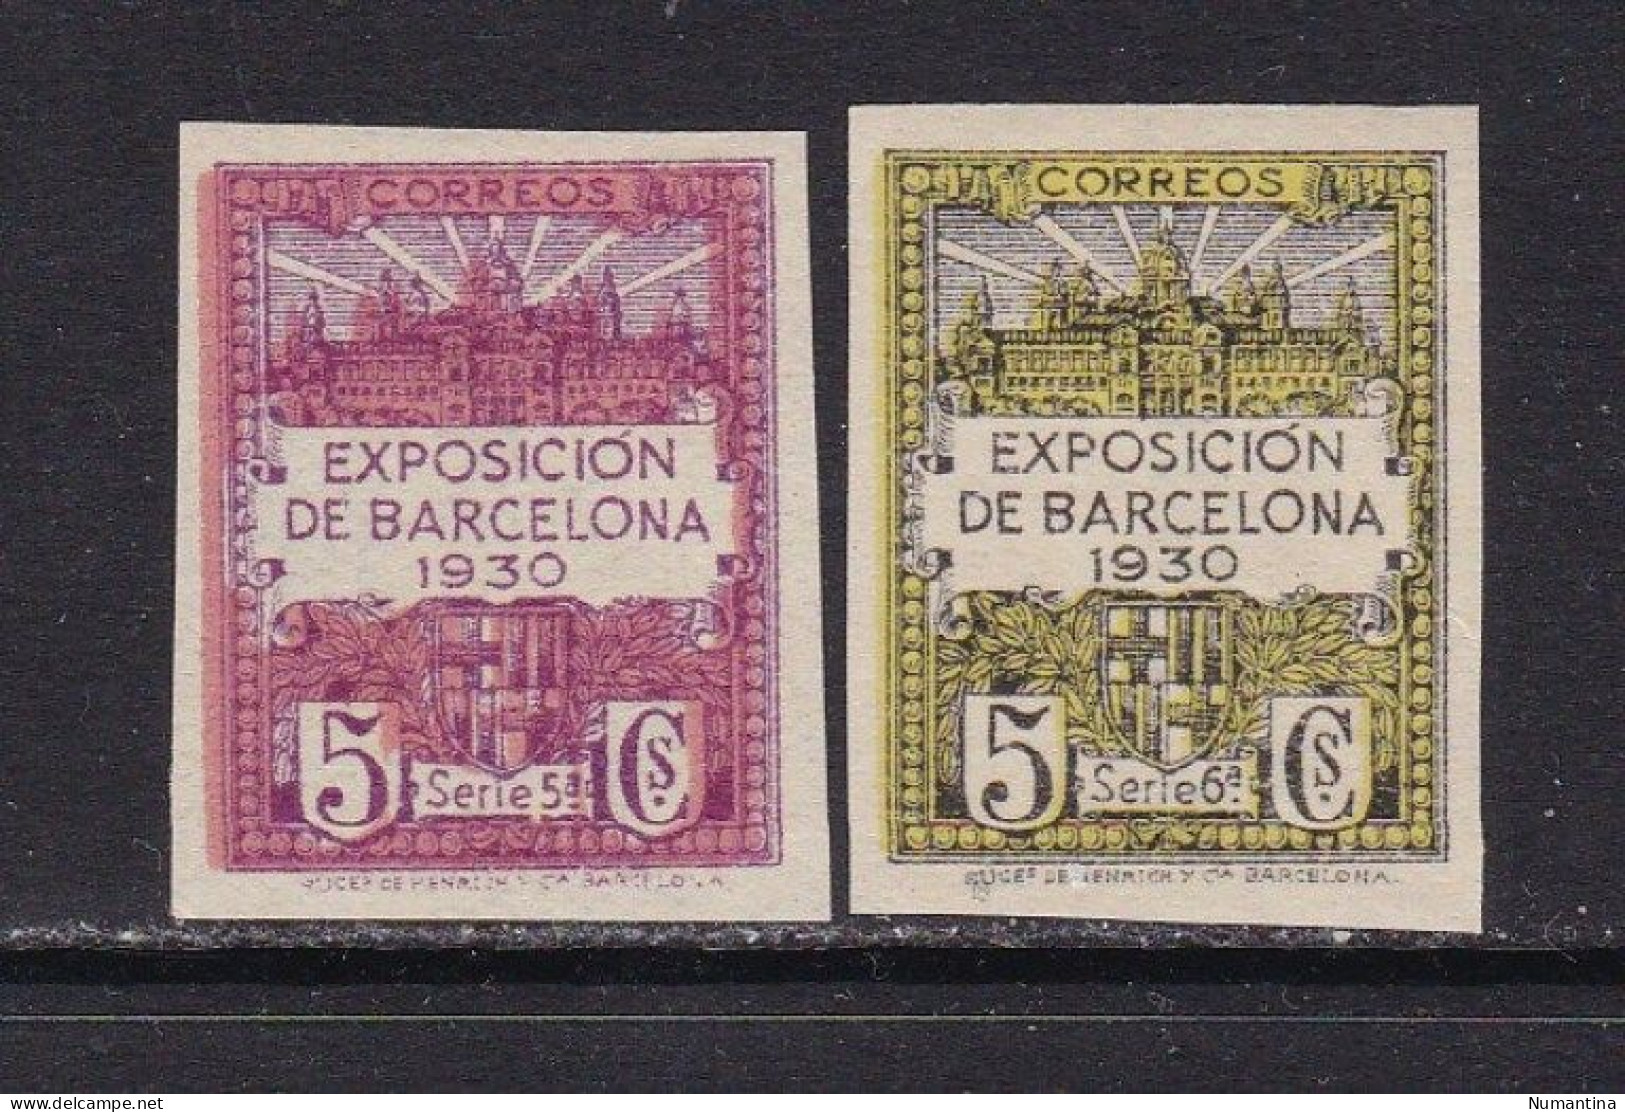 1929 - España - Barcelona - Edifil 4s/5s - Sin Dentar - Exposicion De Barcelona 1930 - MNG - Barcelona